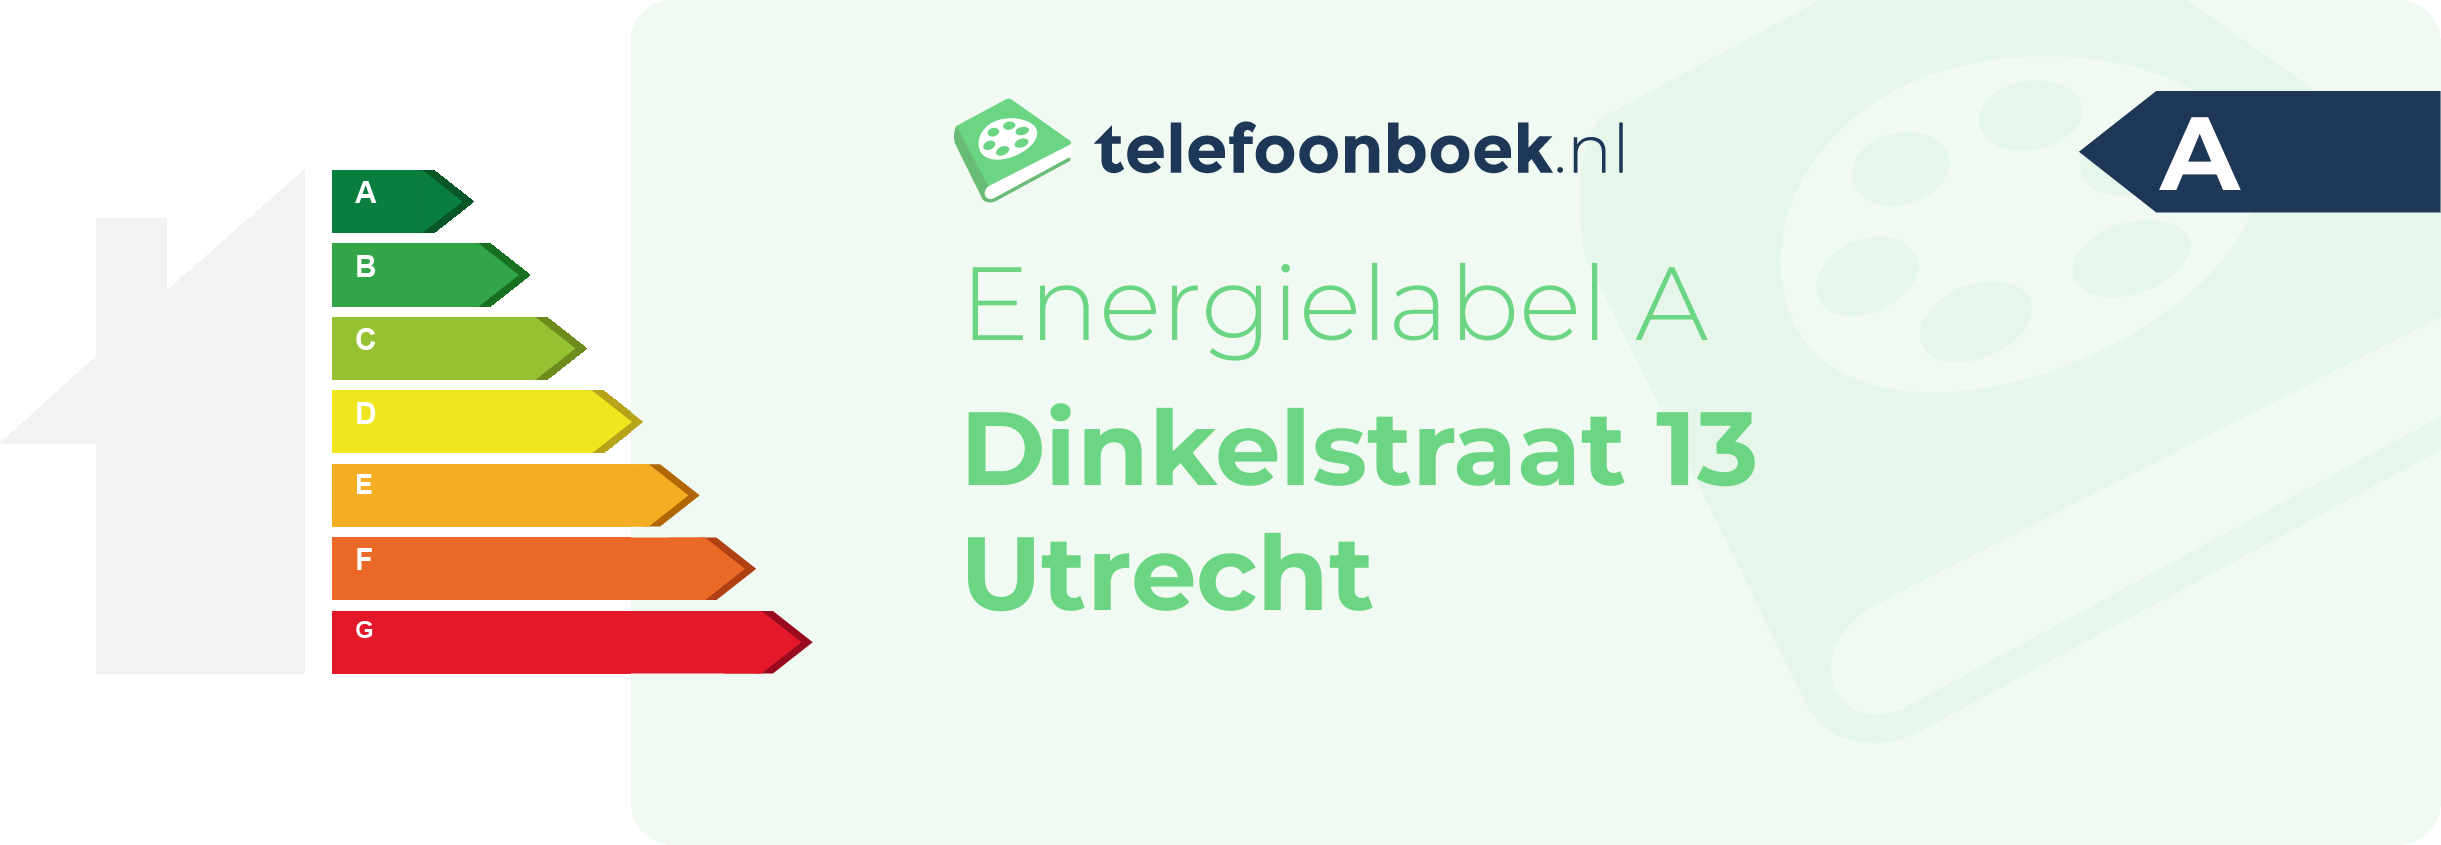 Energielabel Dinkelstraat 13 Utrecht